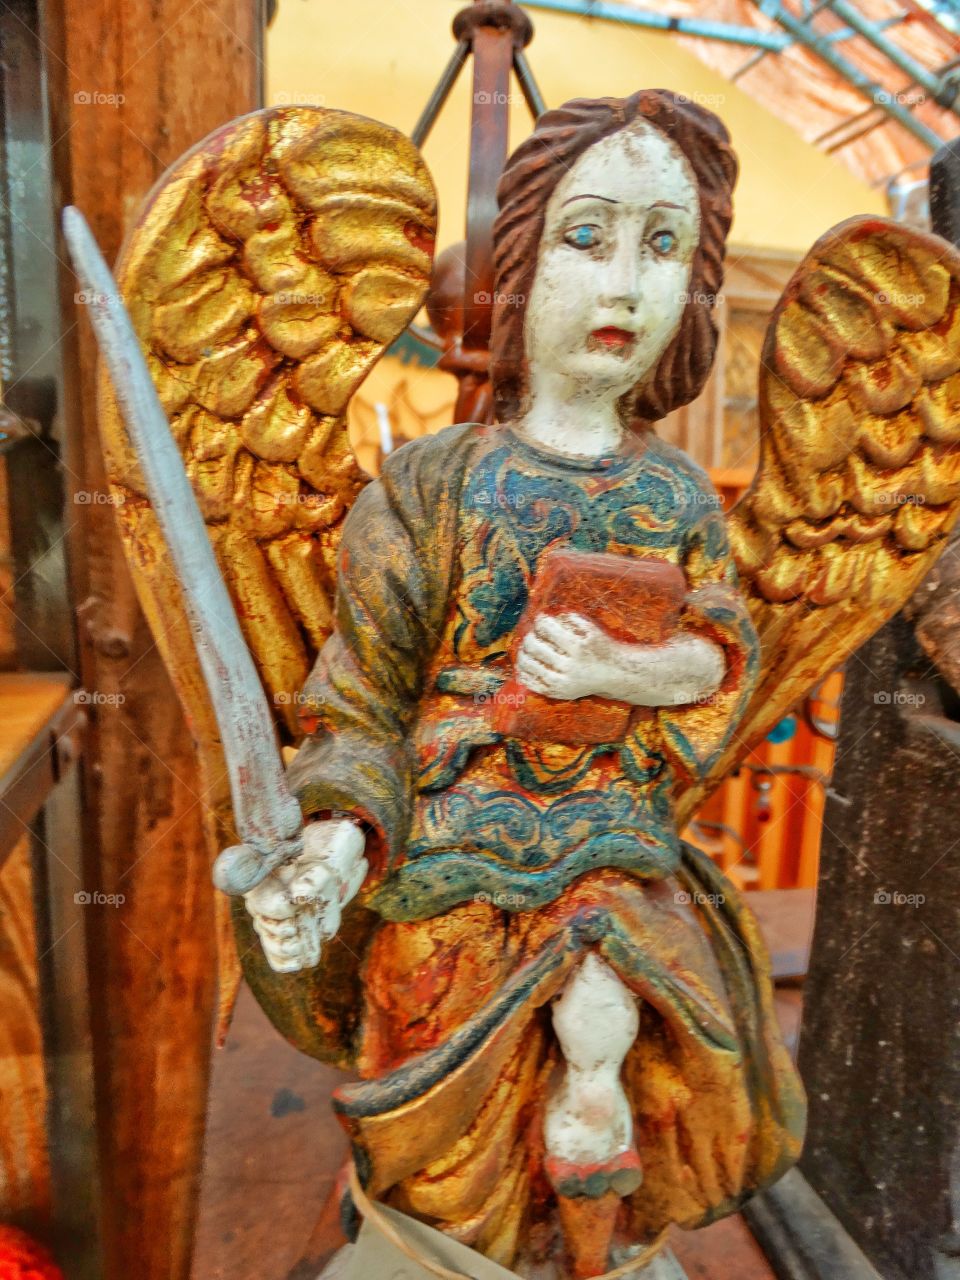 Guardian Angel
